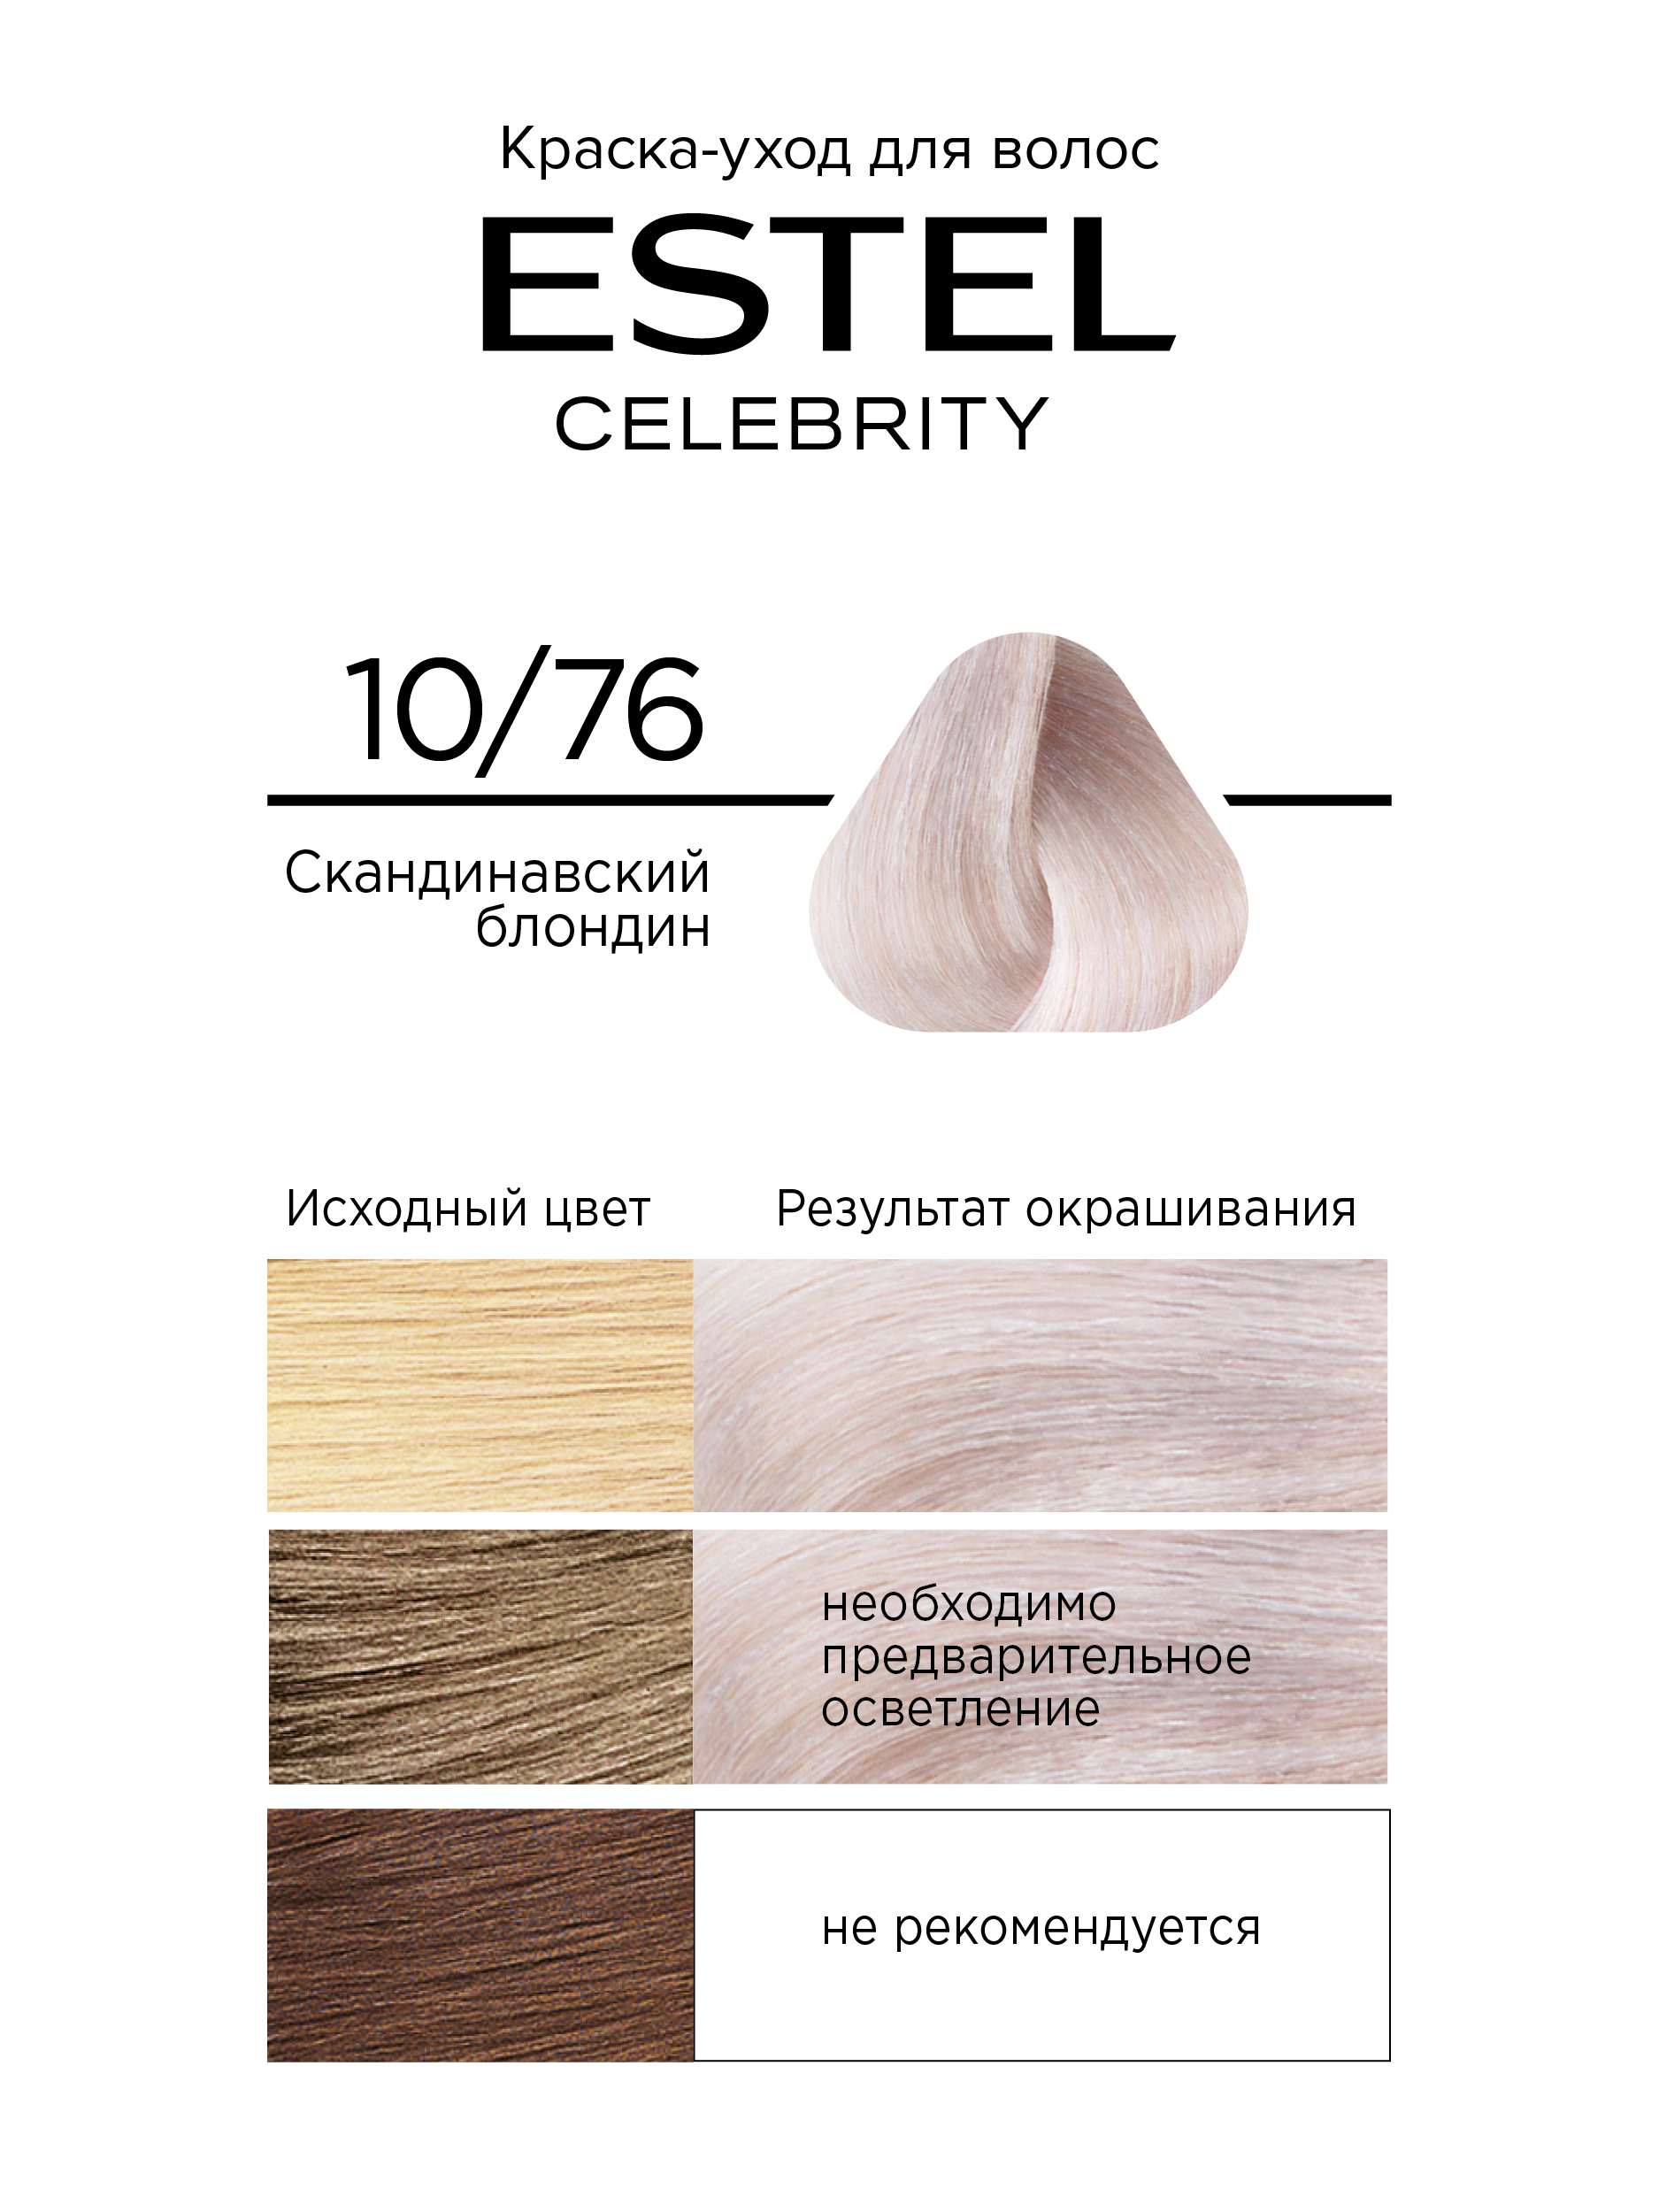 Краска для волос Estel Celebrity тон 10.76 скандинавский блондин